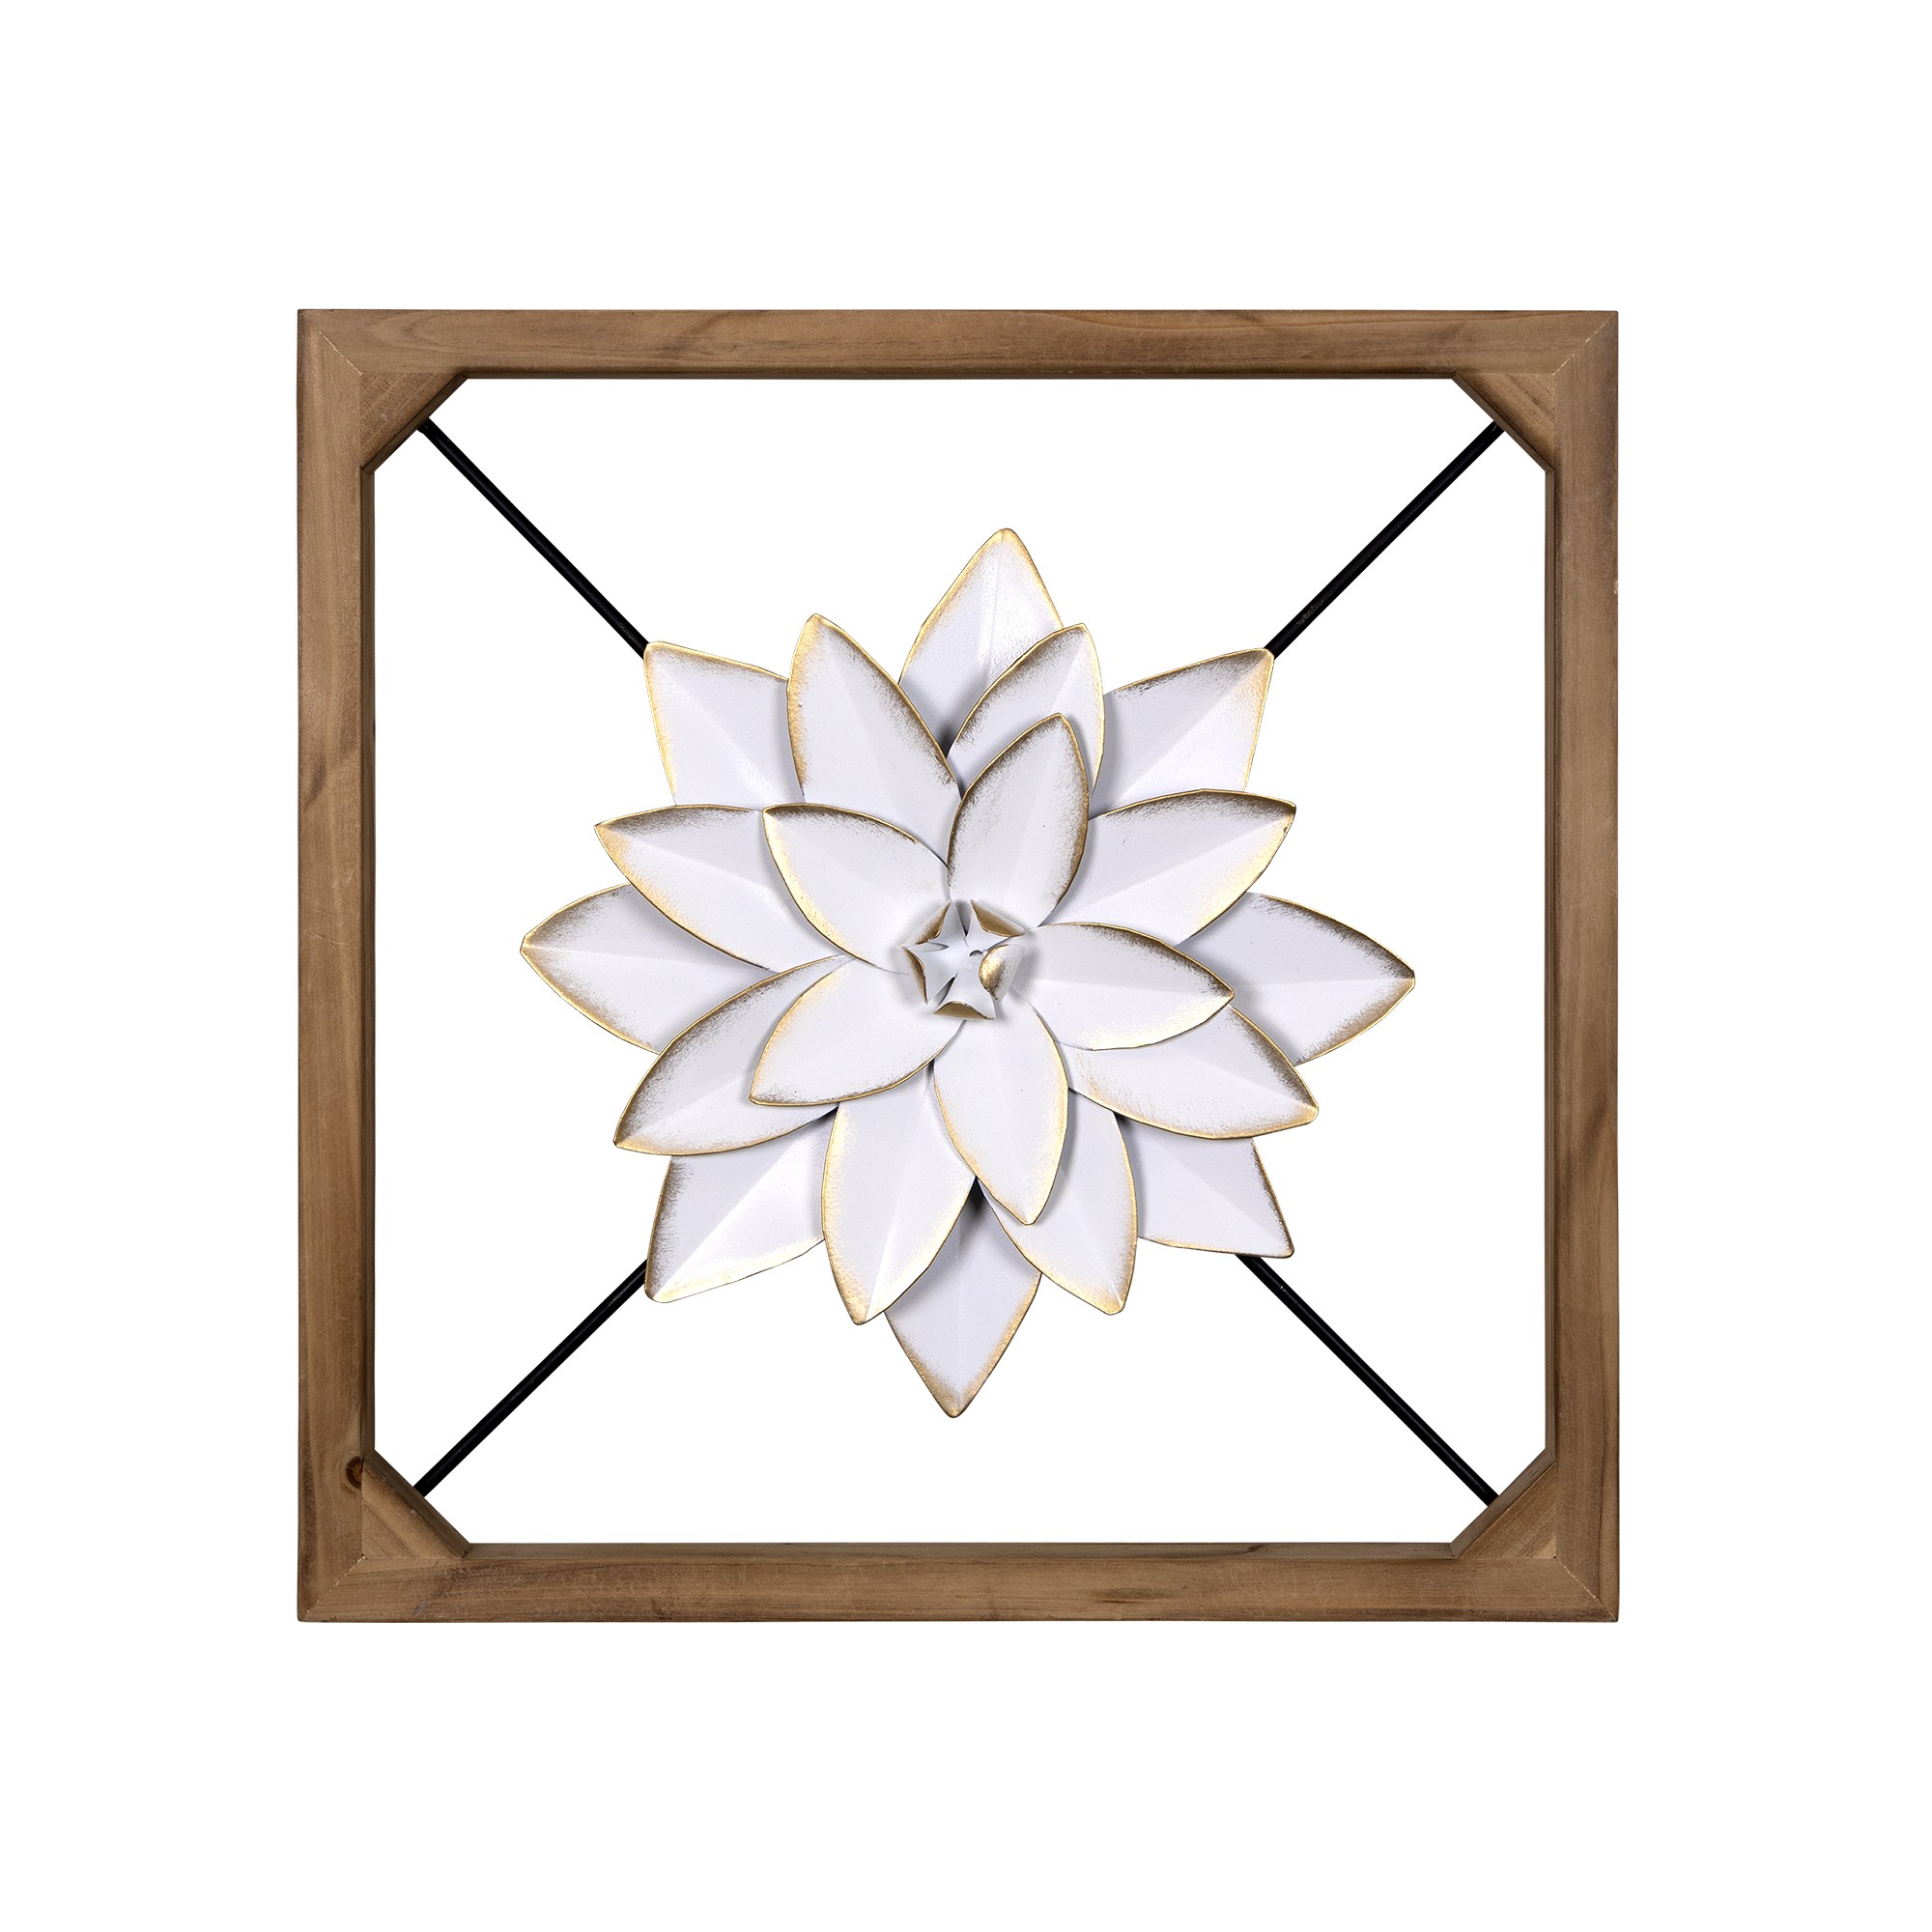 Wood Framed White Metal Flower Wall DTcor